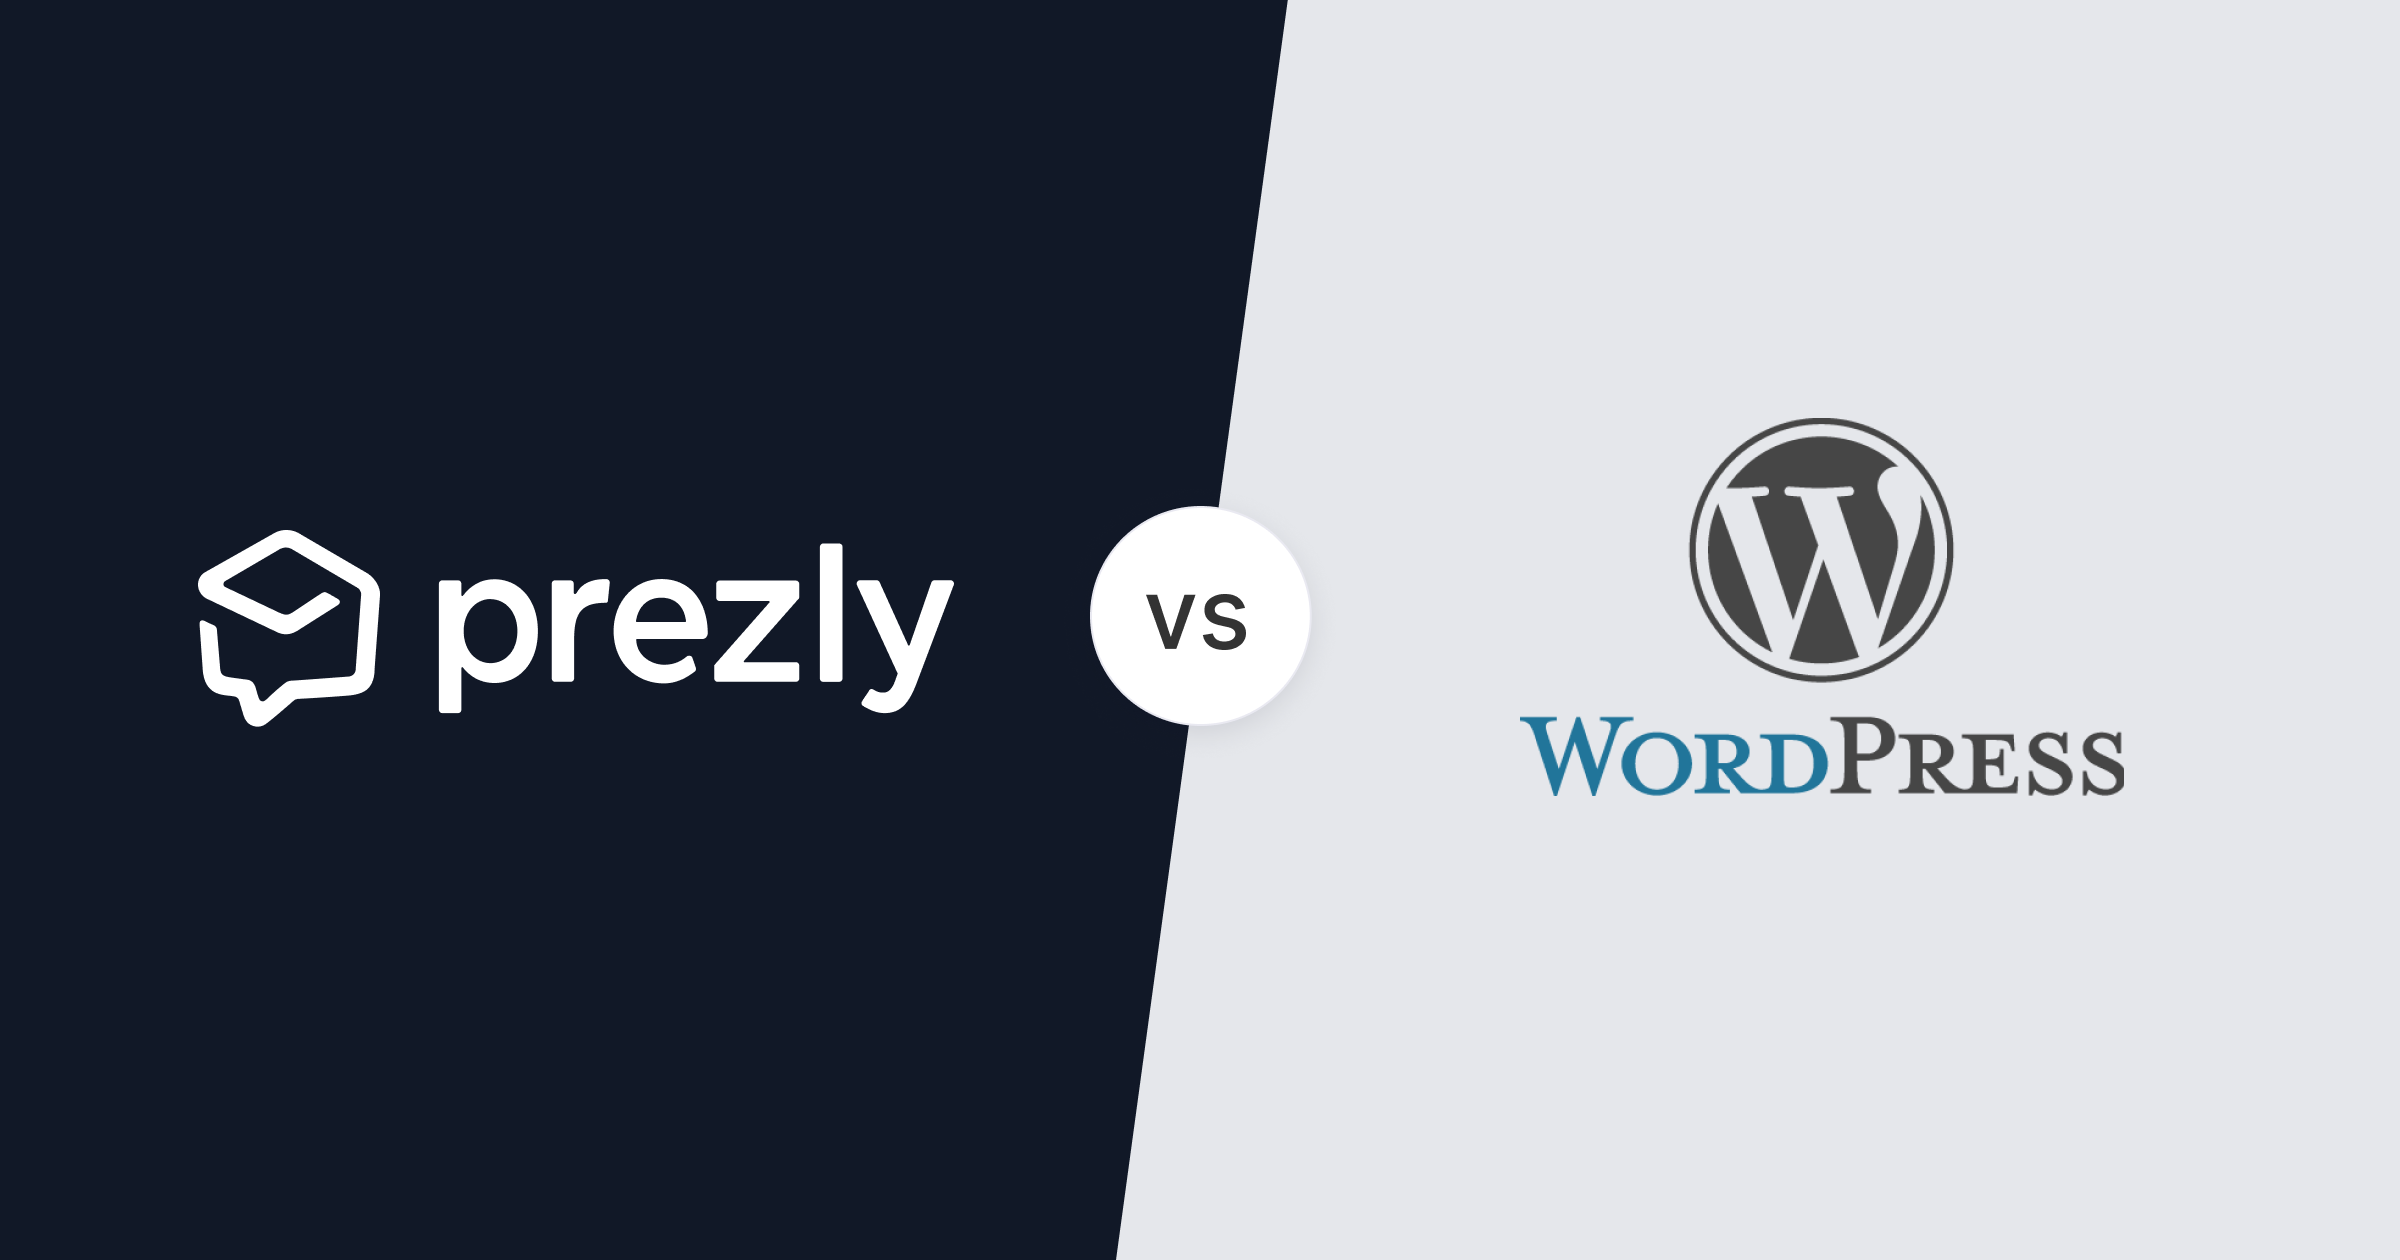 Prezly vs WordPress